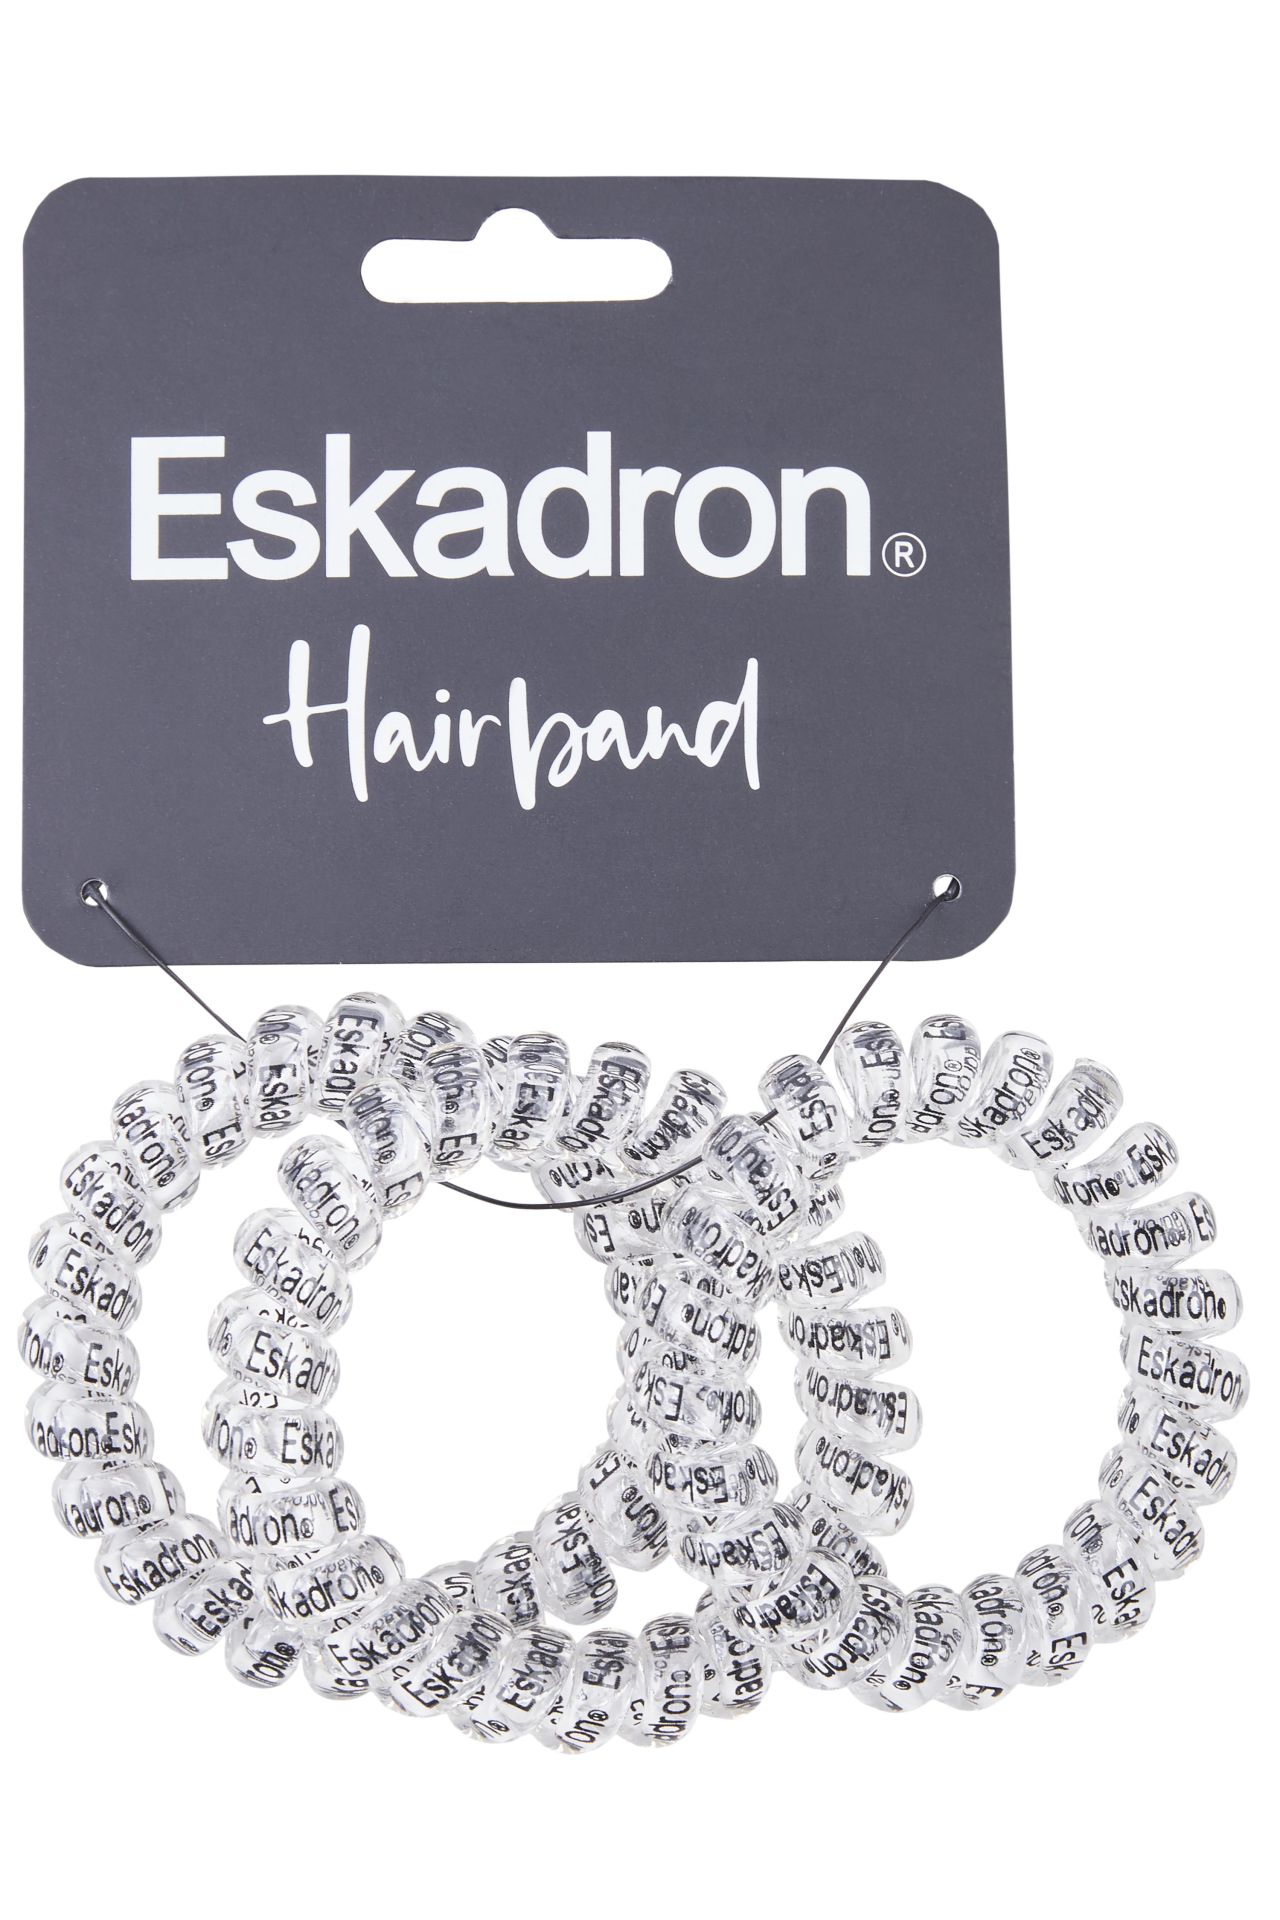 ESKADRON stylisches Haarband Hairbobble 3er Pack - uni  - Set - 1